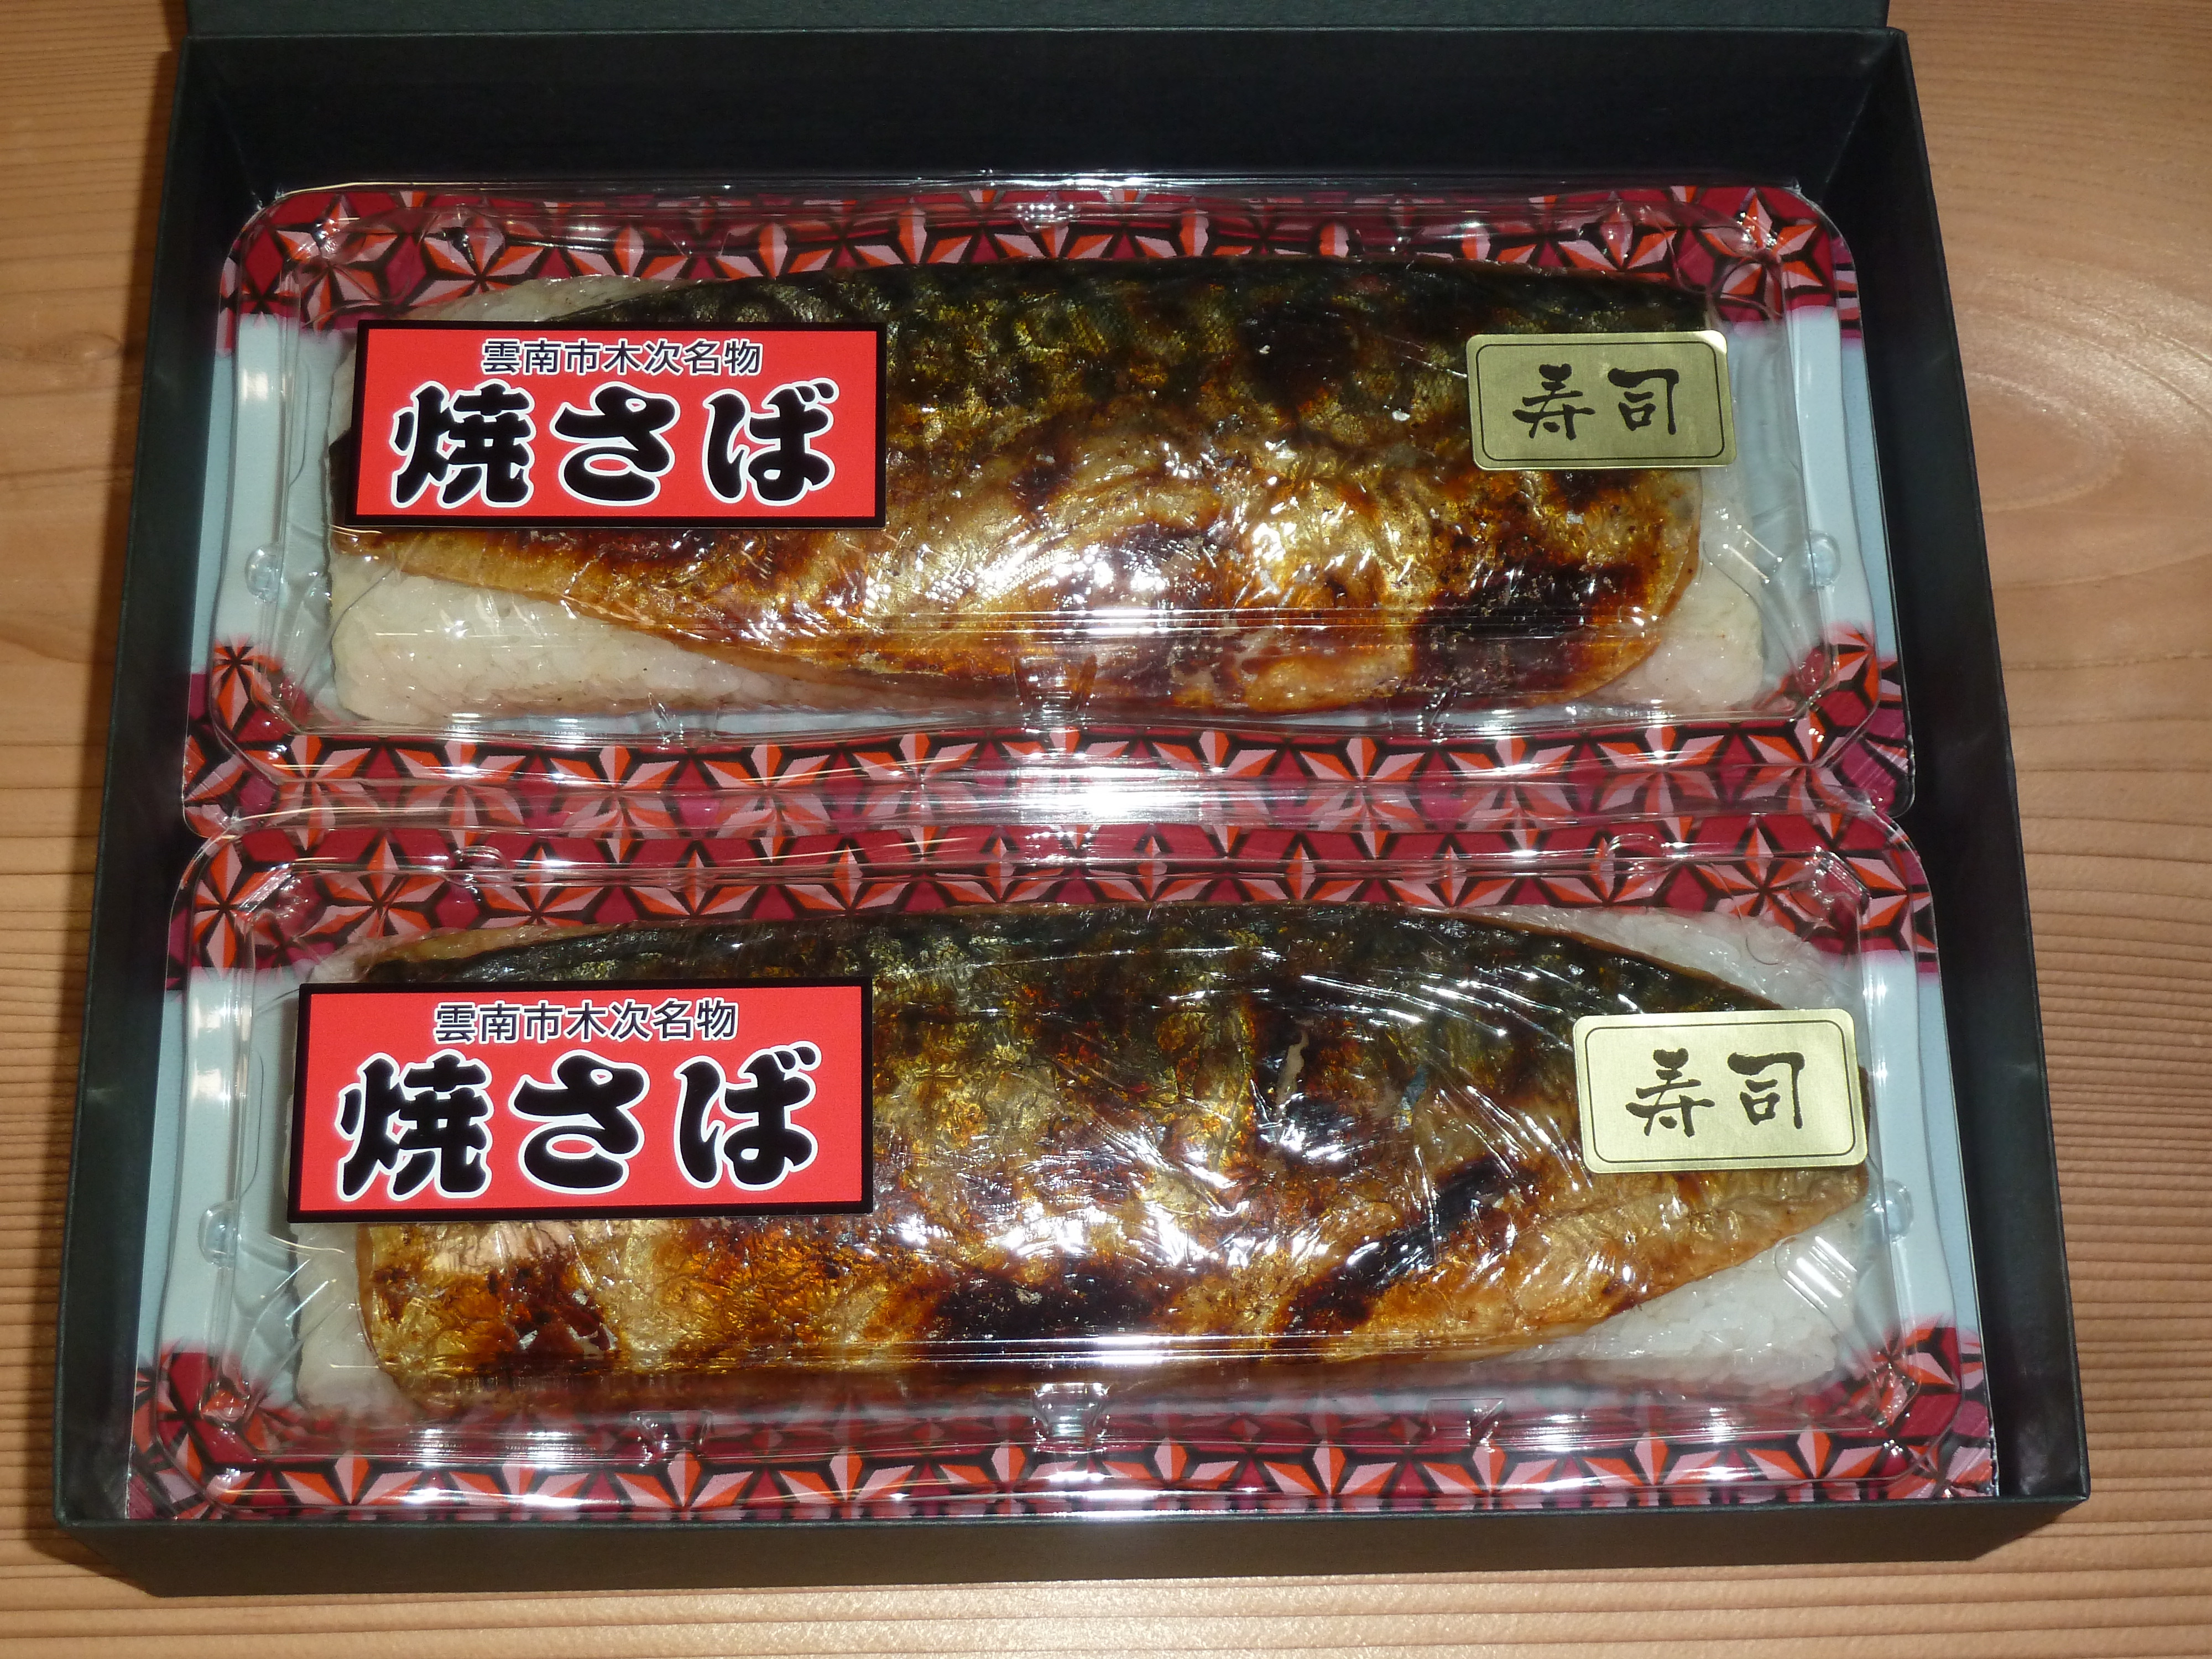 冷凍 焼き鯖寿司-秀逸な味わい